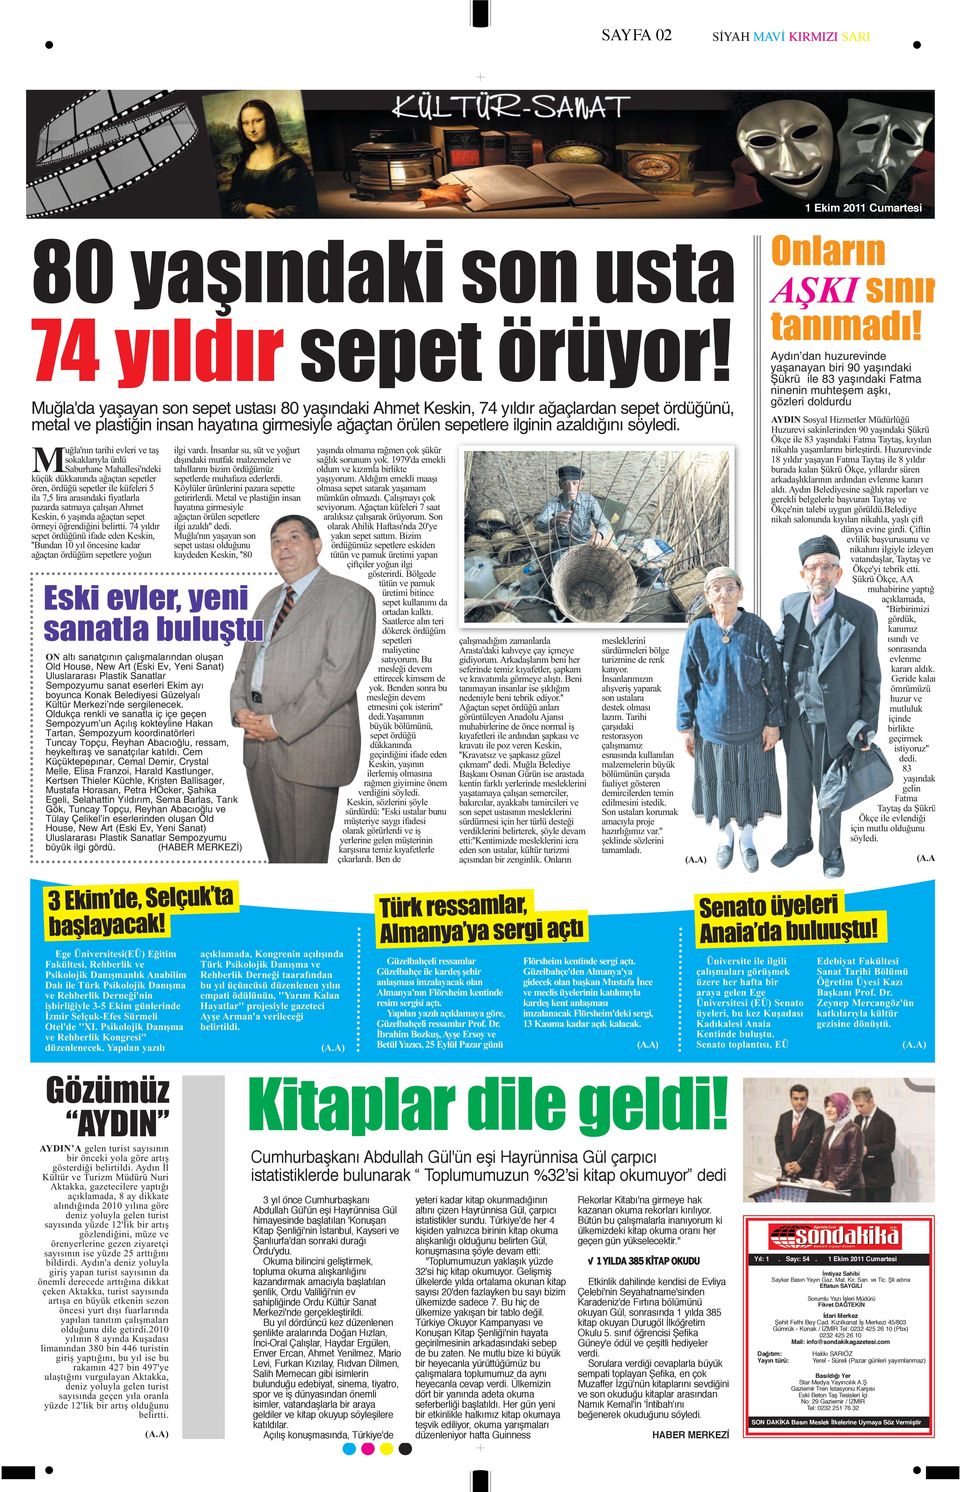 girmeye hak Abdullah Gül'ün eşi Hayrünnisa Gül altını çizen Hayrünnisa Gül, çarpıcı kazanan okuma rekorları kırılıyor. himayesinde başlatılan 'Konuşan istatistikler sundu.